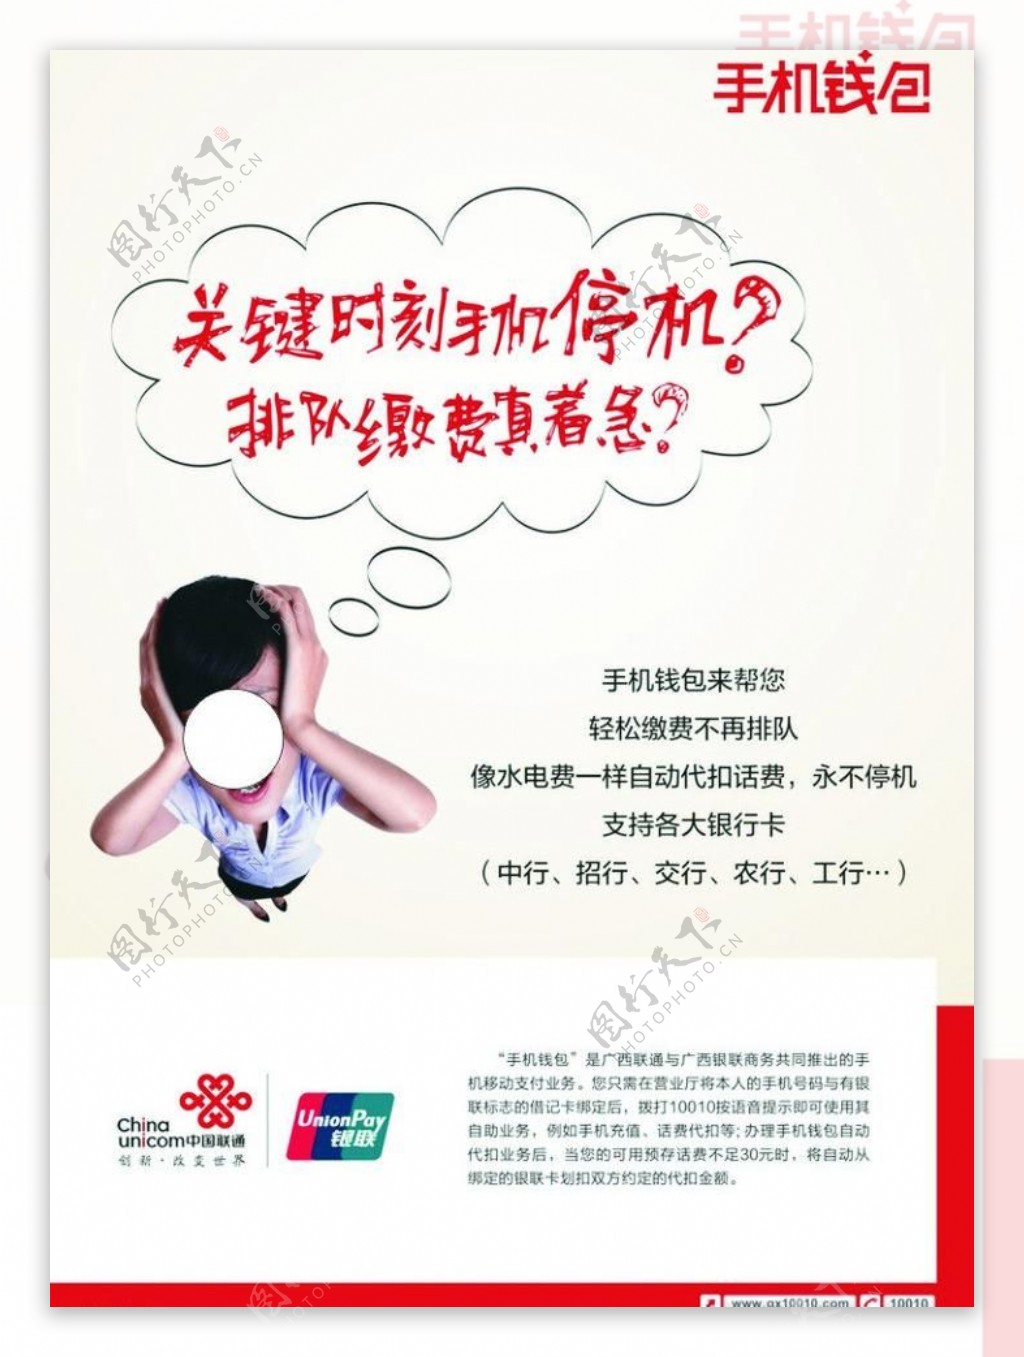 中国联通手机钱包海报图片